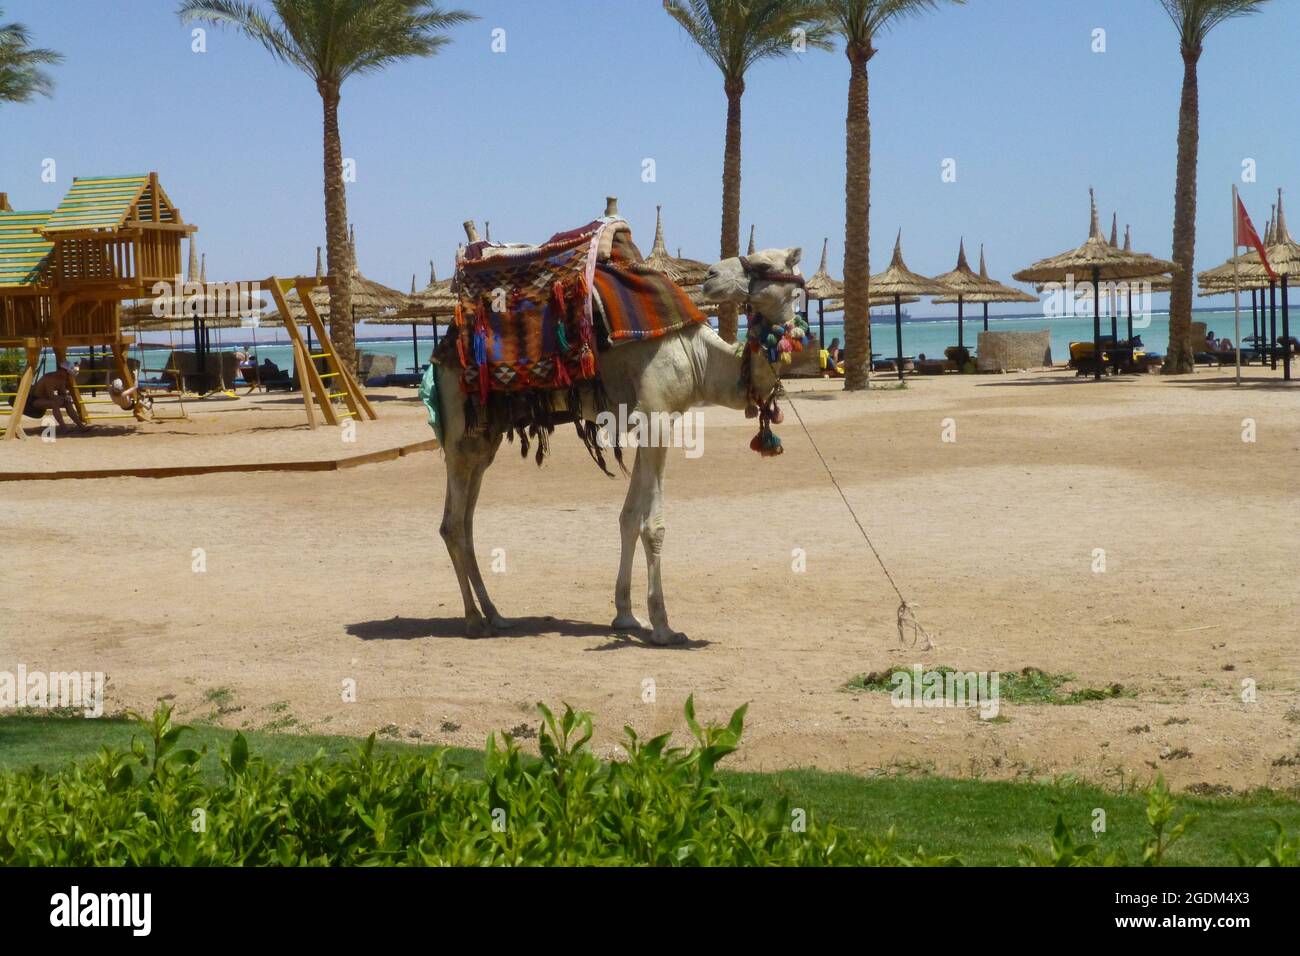 Kamele in Sharm El Sheikh Ägypten Strand Meer Arabische Araber Palmen Baum Sand Ufer Gras heiße Sonne sonnigen Ort Menschen entspannte Tiere Tiere Stockfoto